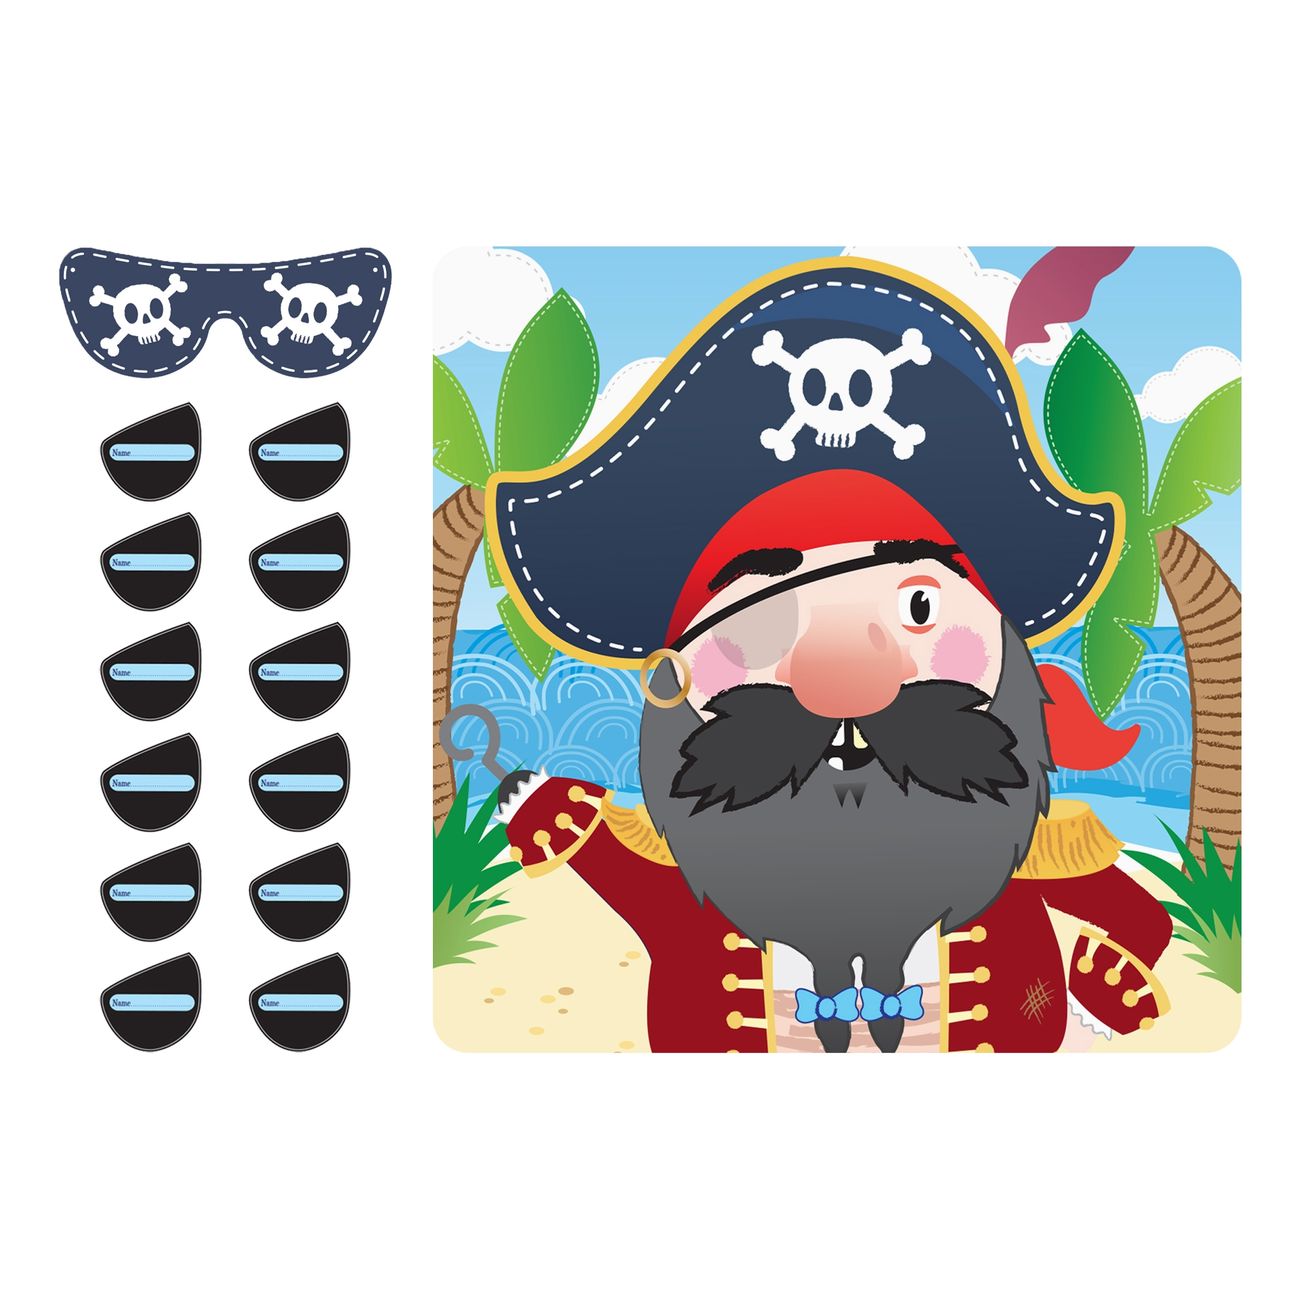 pinna-ogonlappen-spel-pirat-88862-1